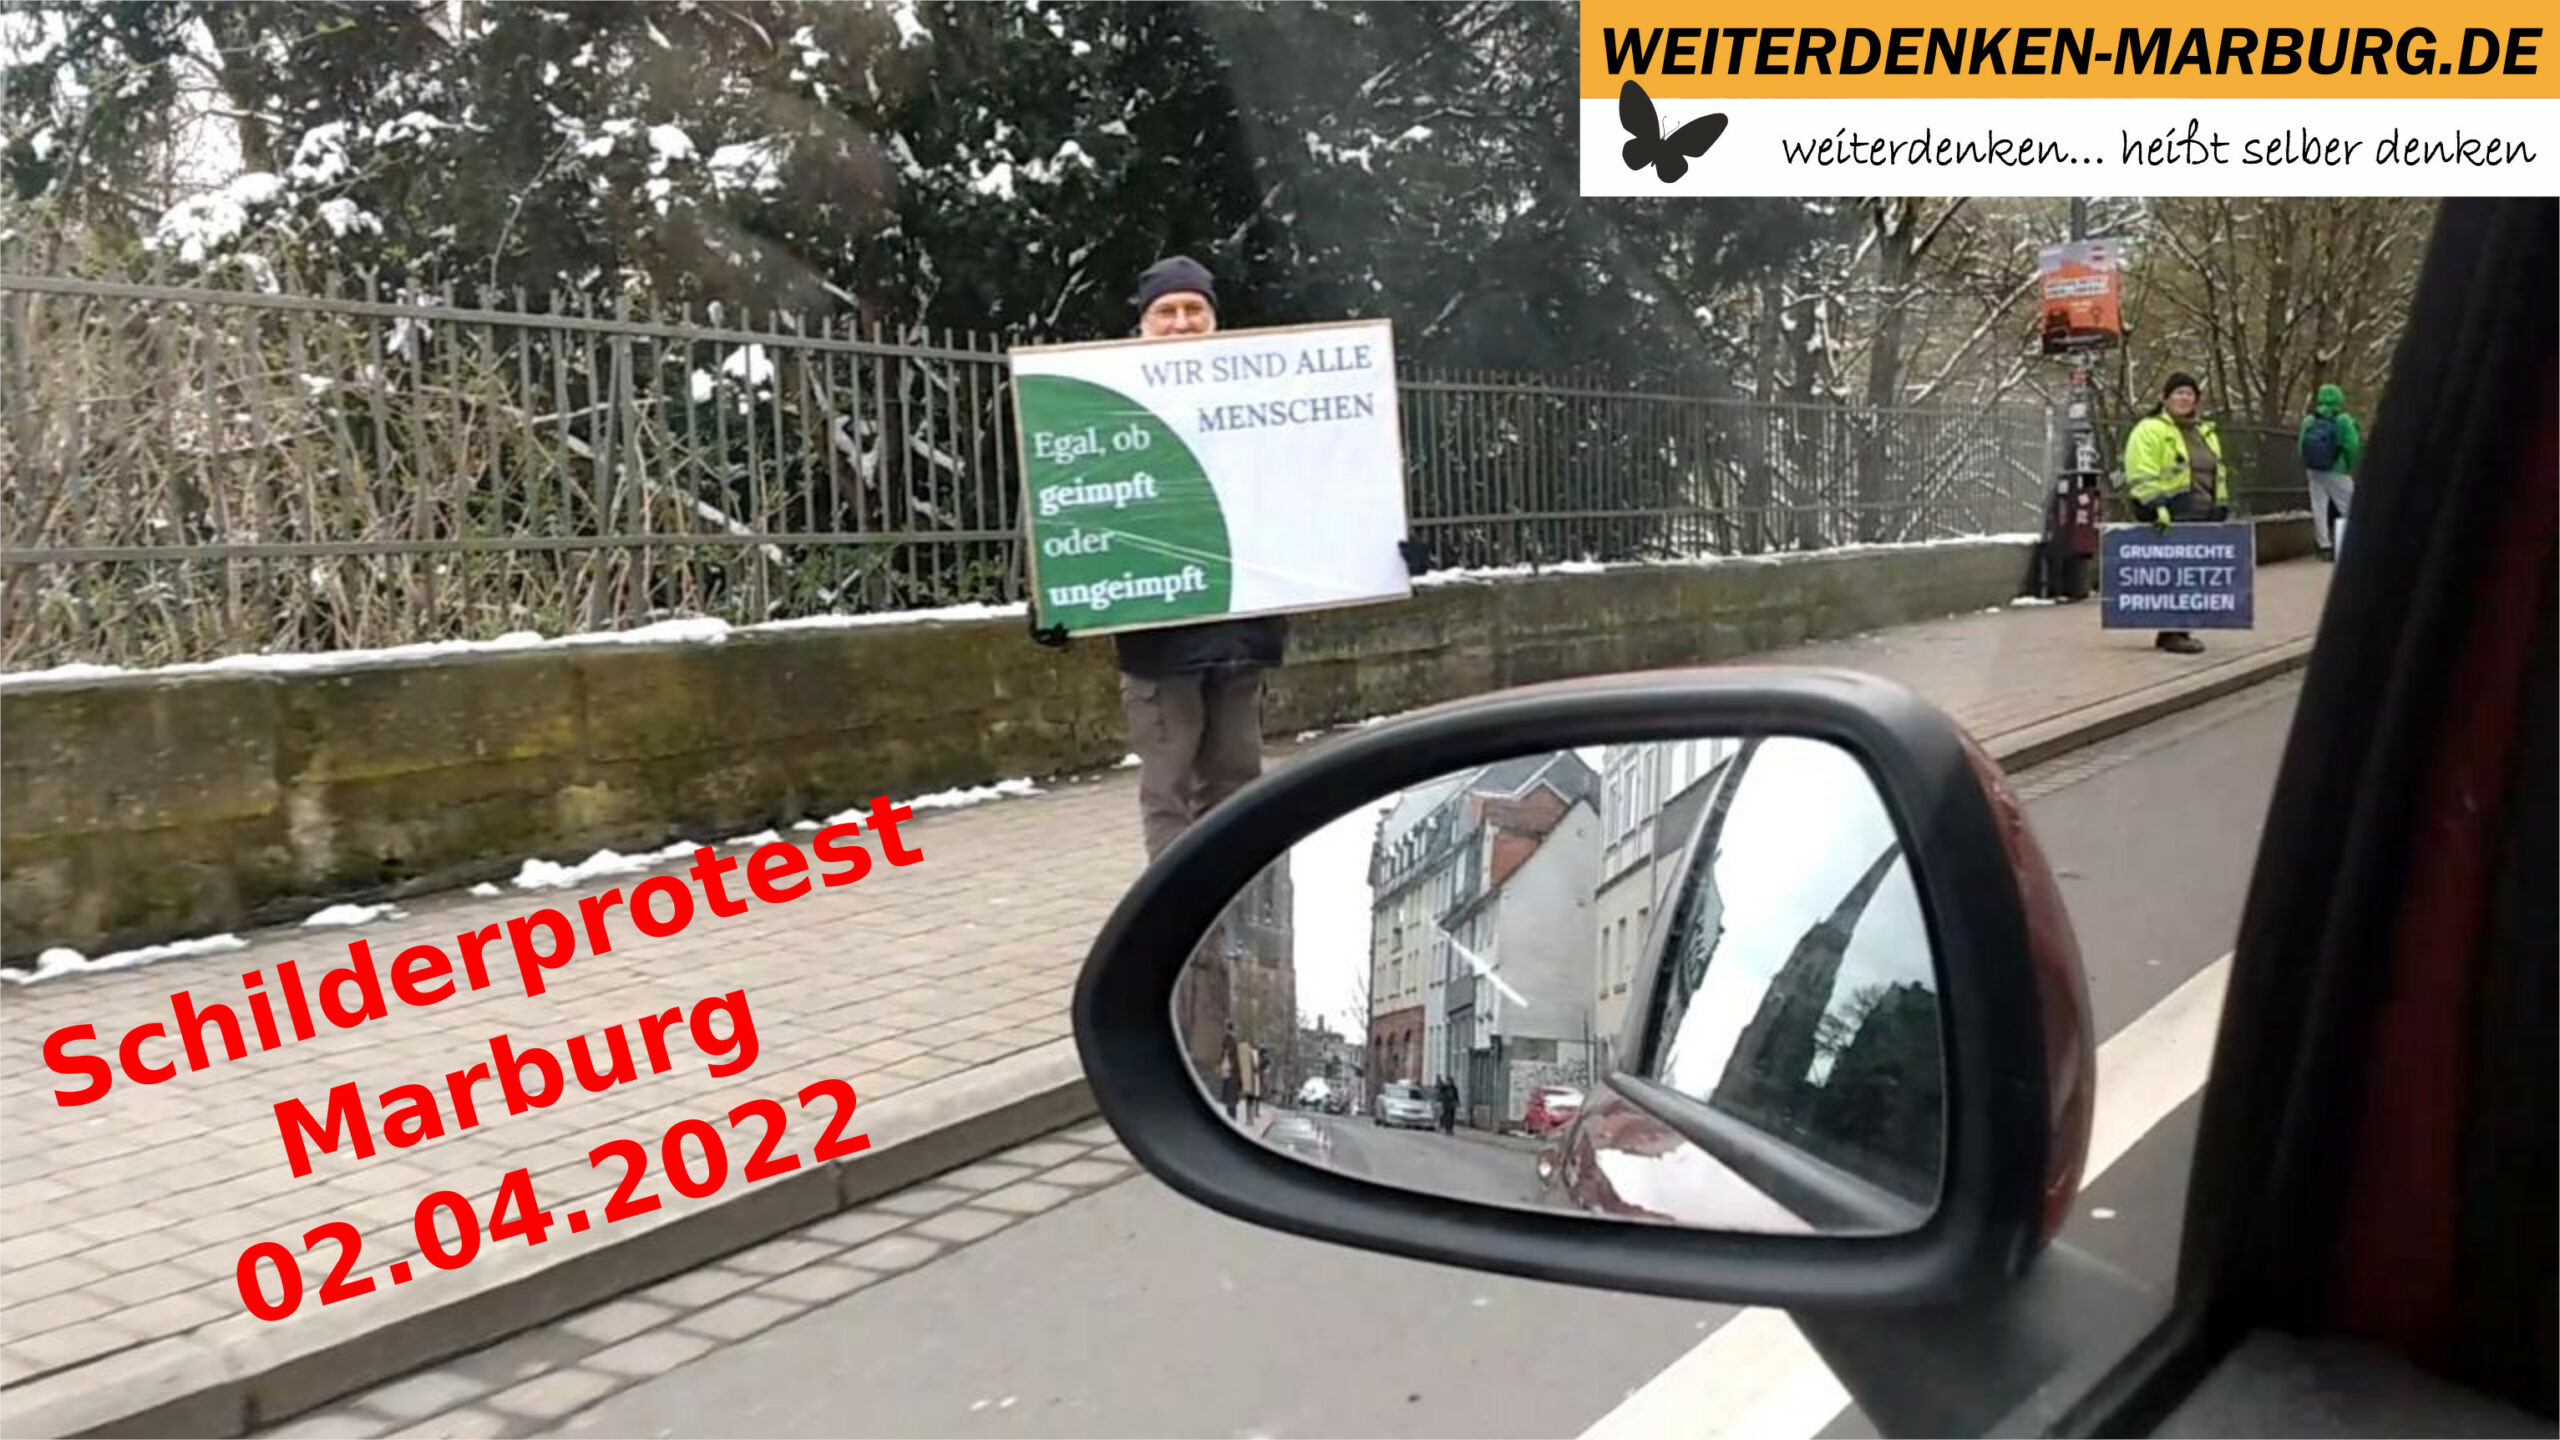 Schilderprotest 02.04.2022